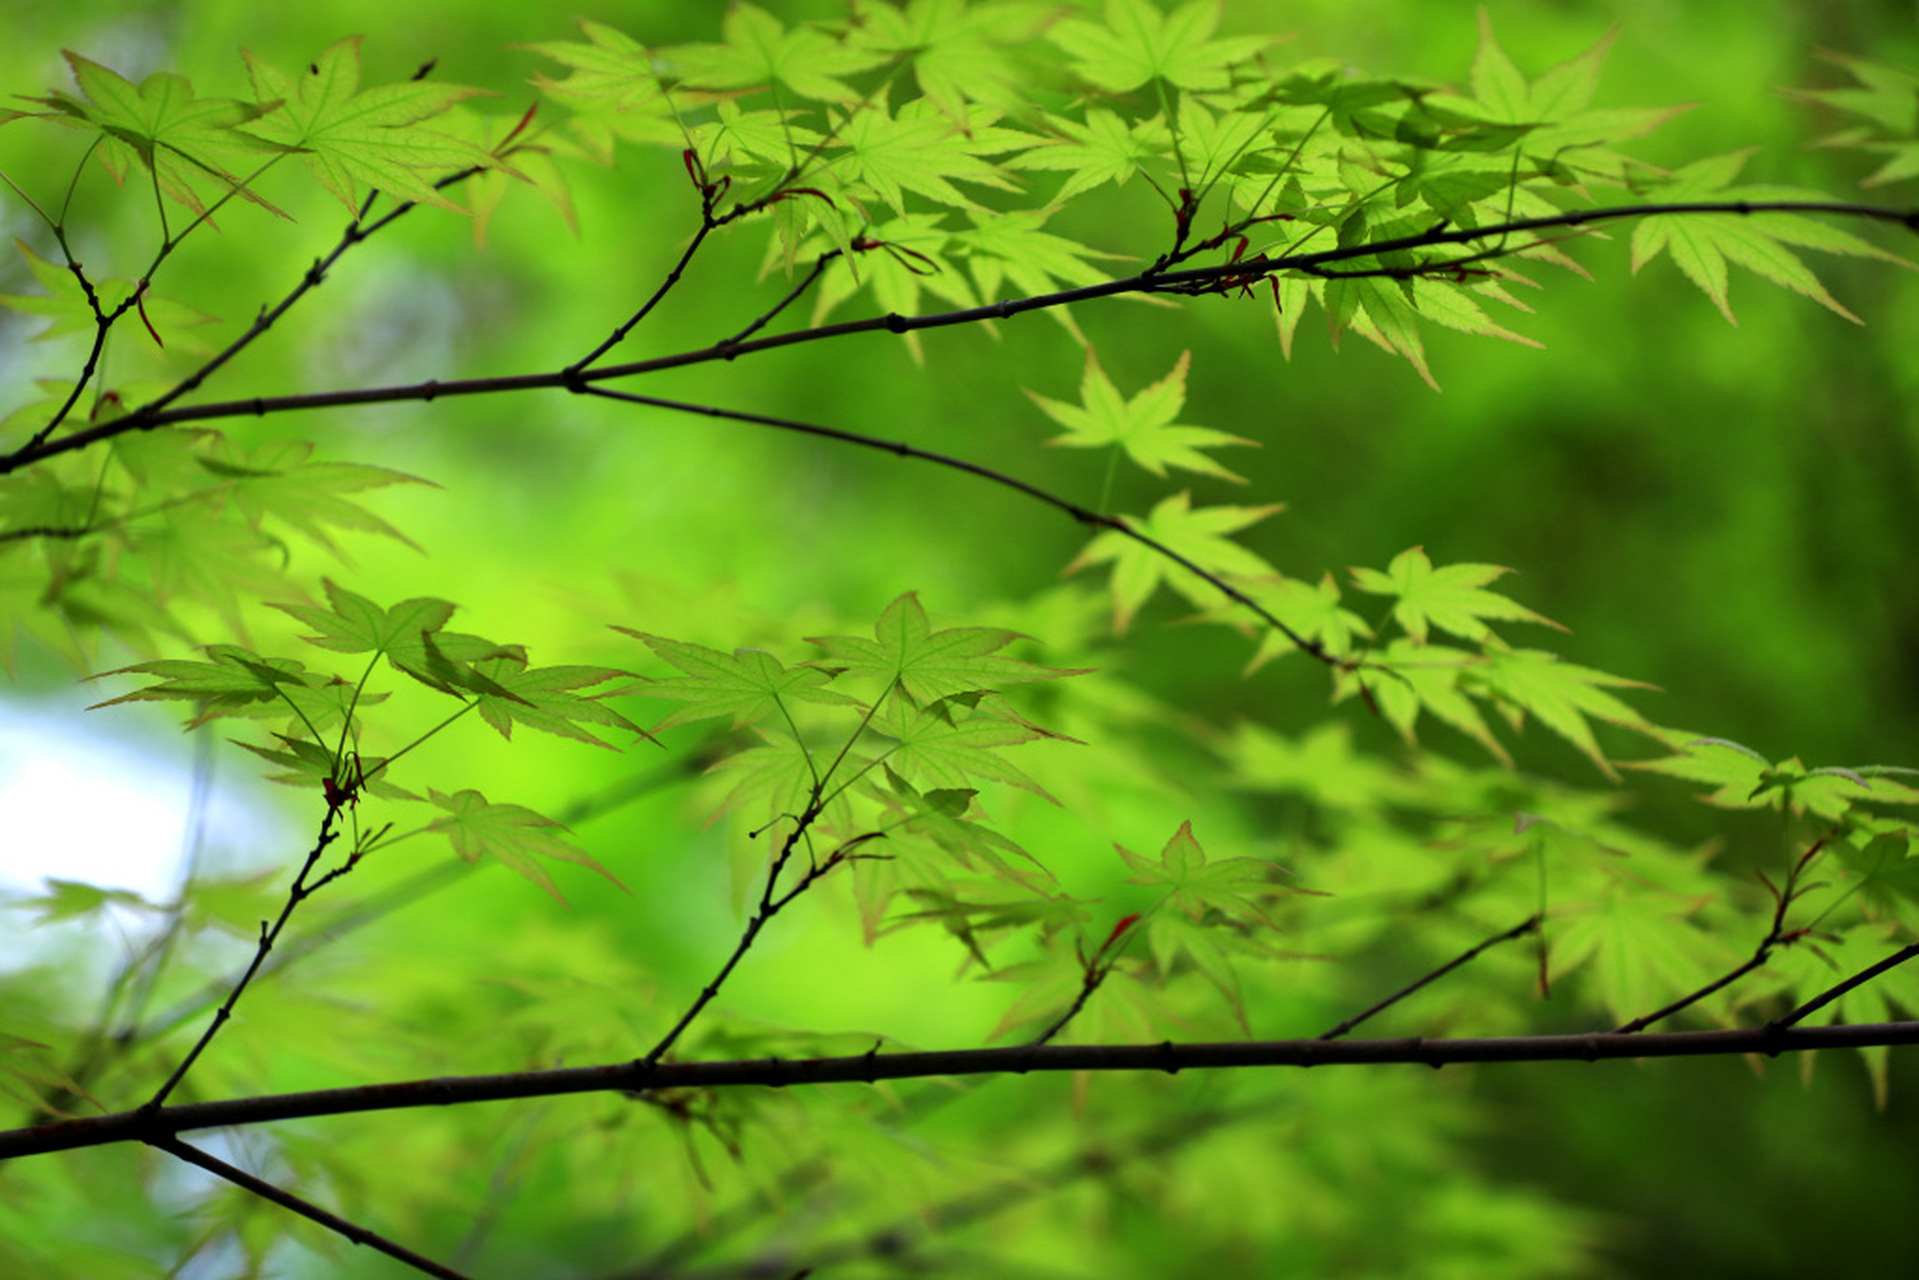 江苏淮安,成片的鸡爪槭开始长出嫩绿的新叶,放眼望去,满目绿意,尽显